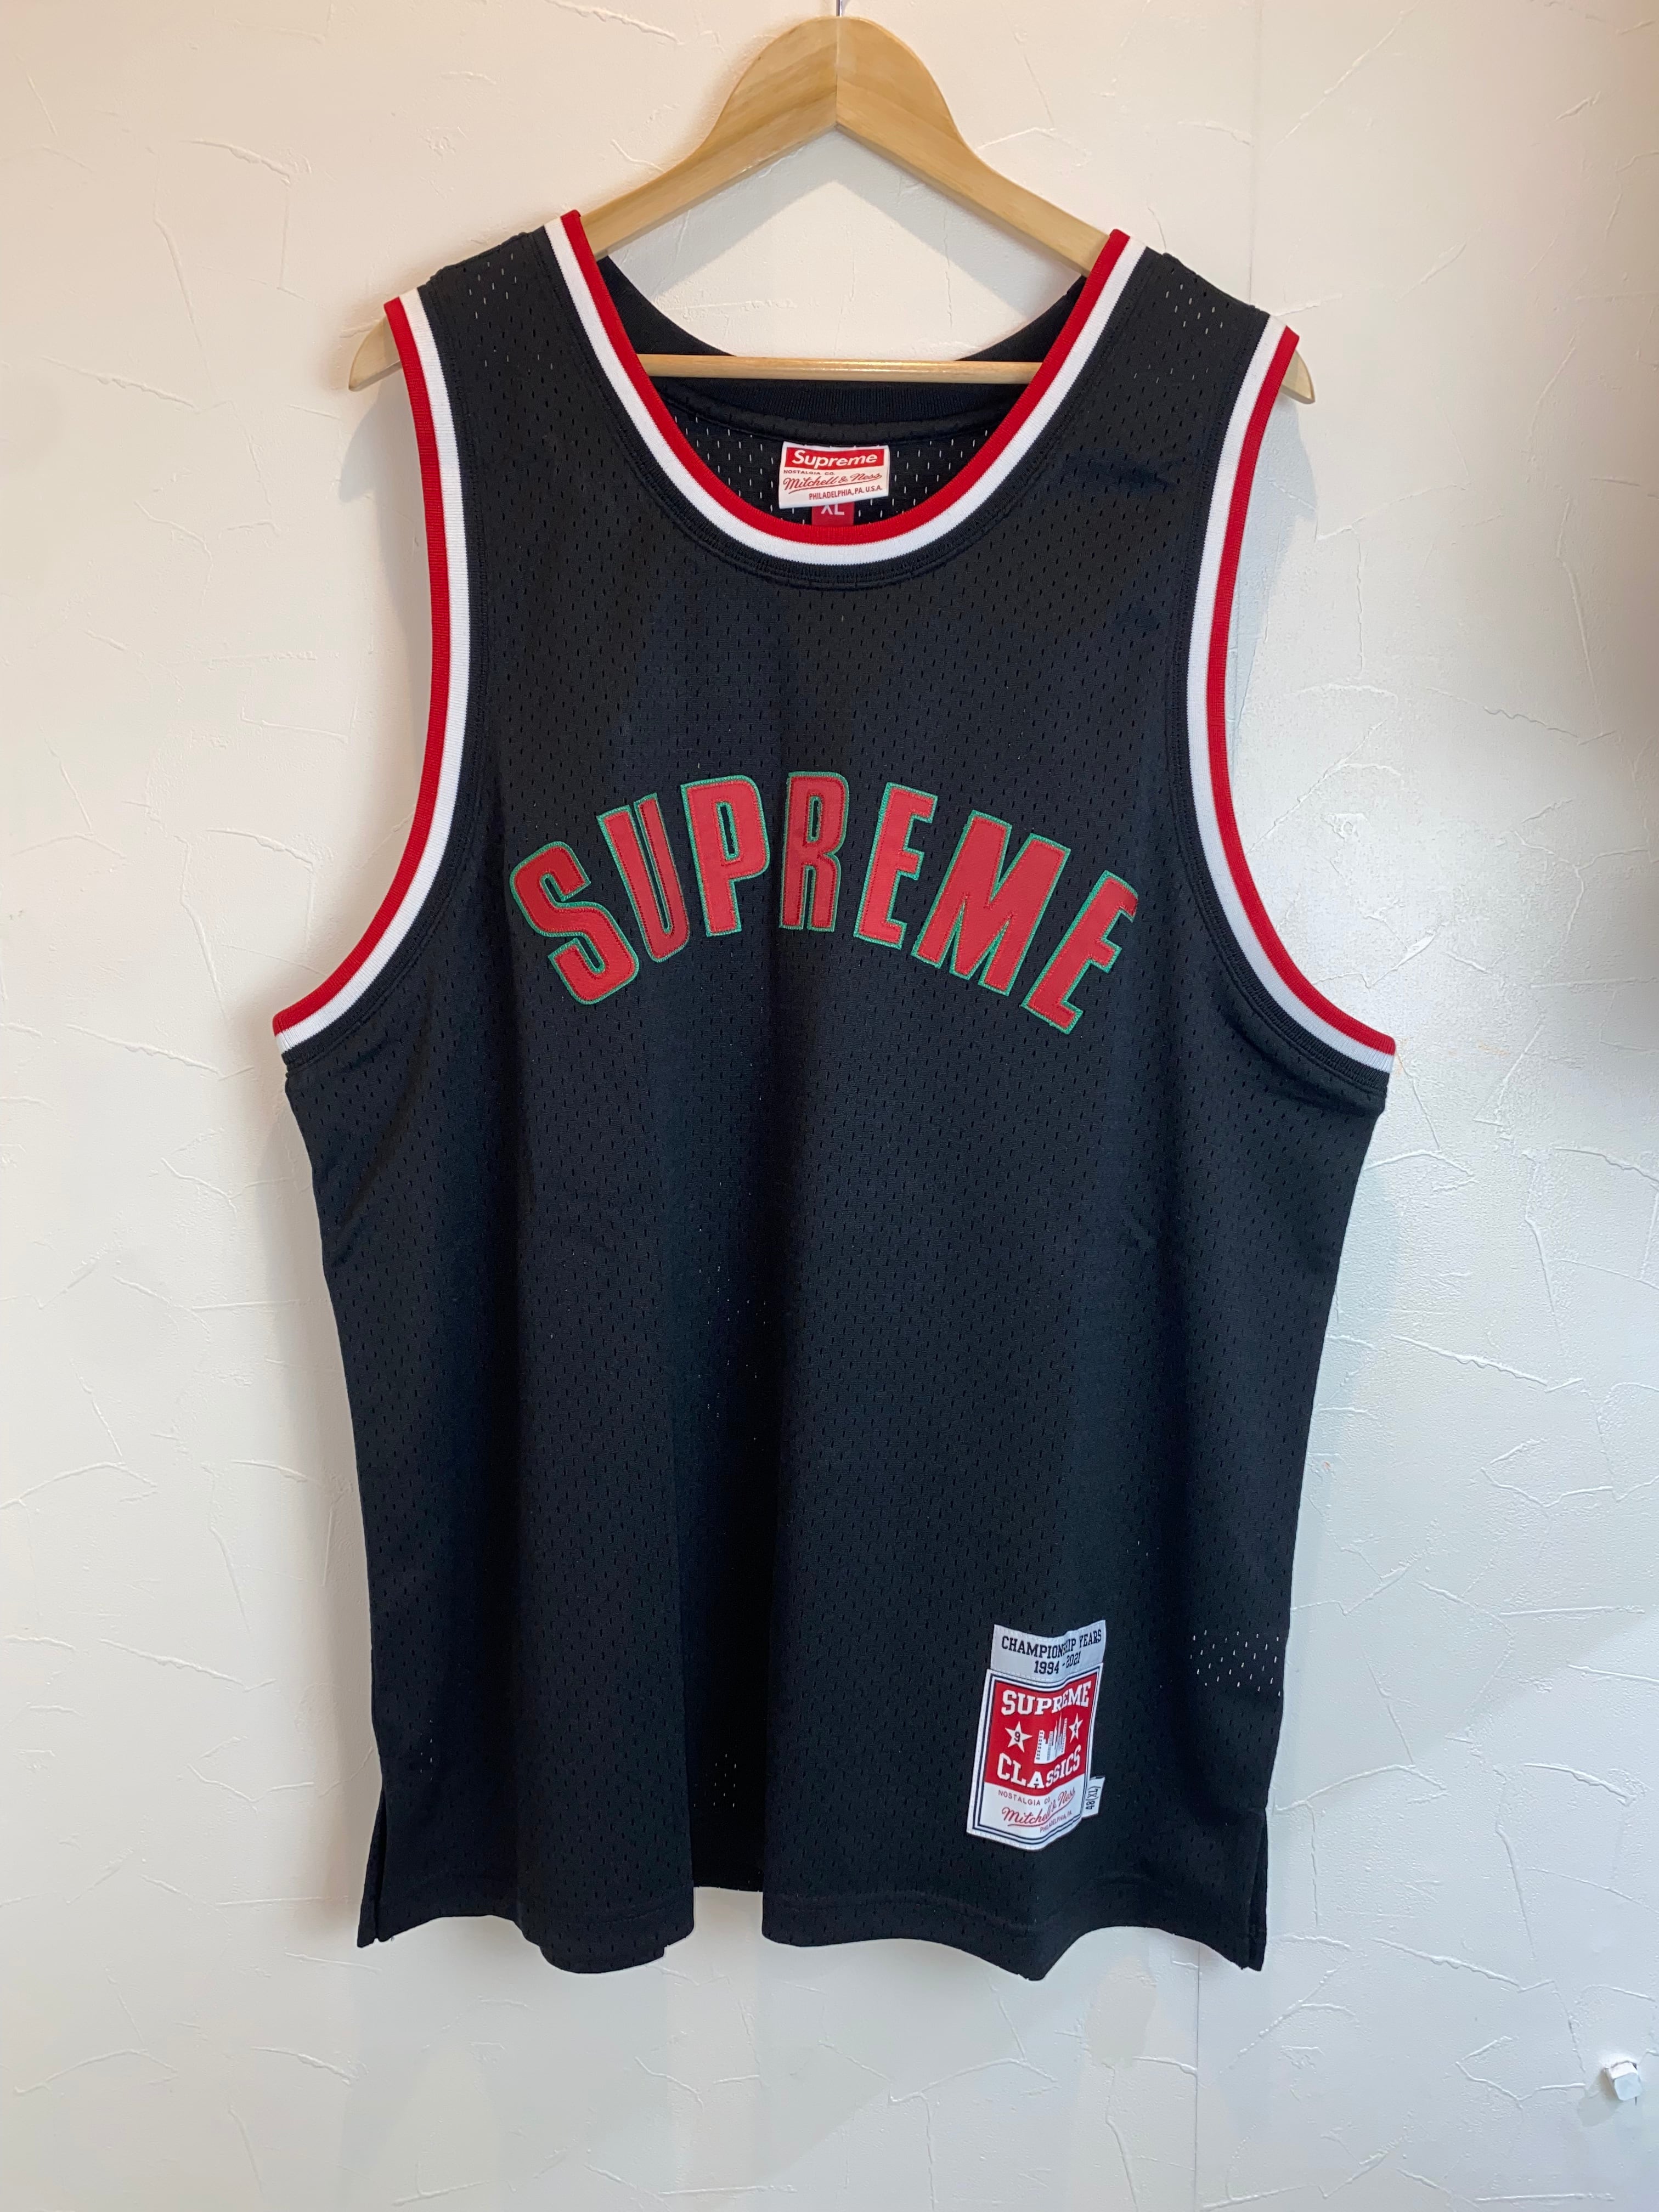 Supreme Mitchell &Ness Basketball Jersey